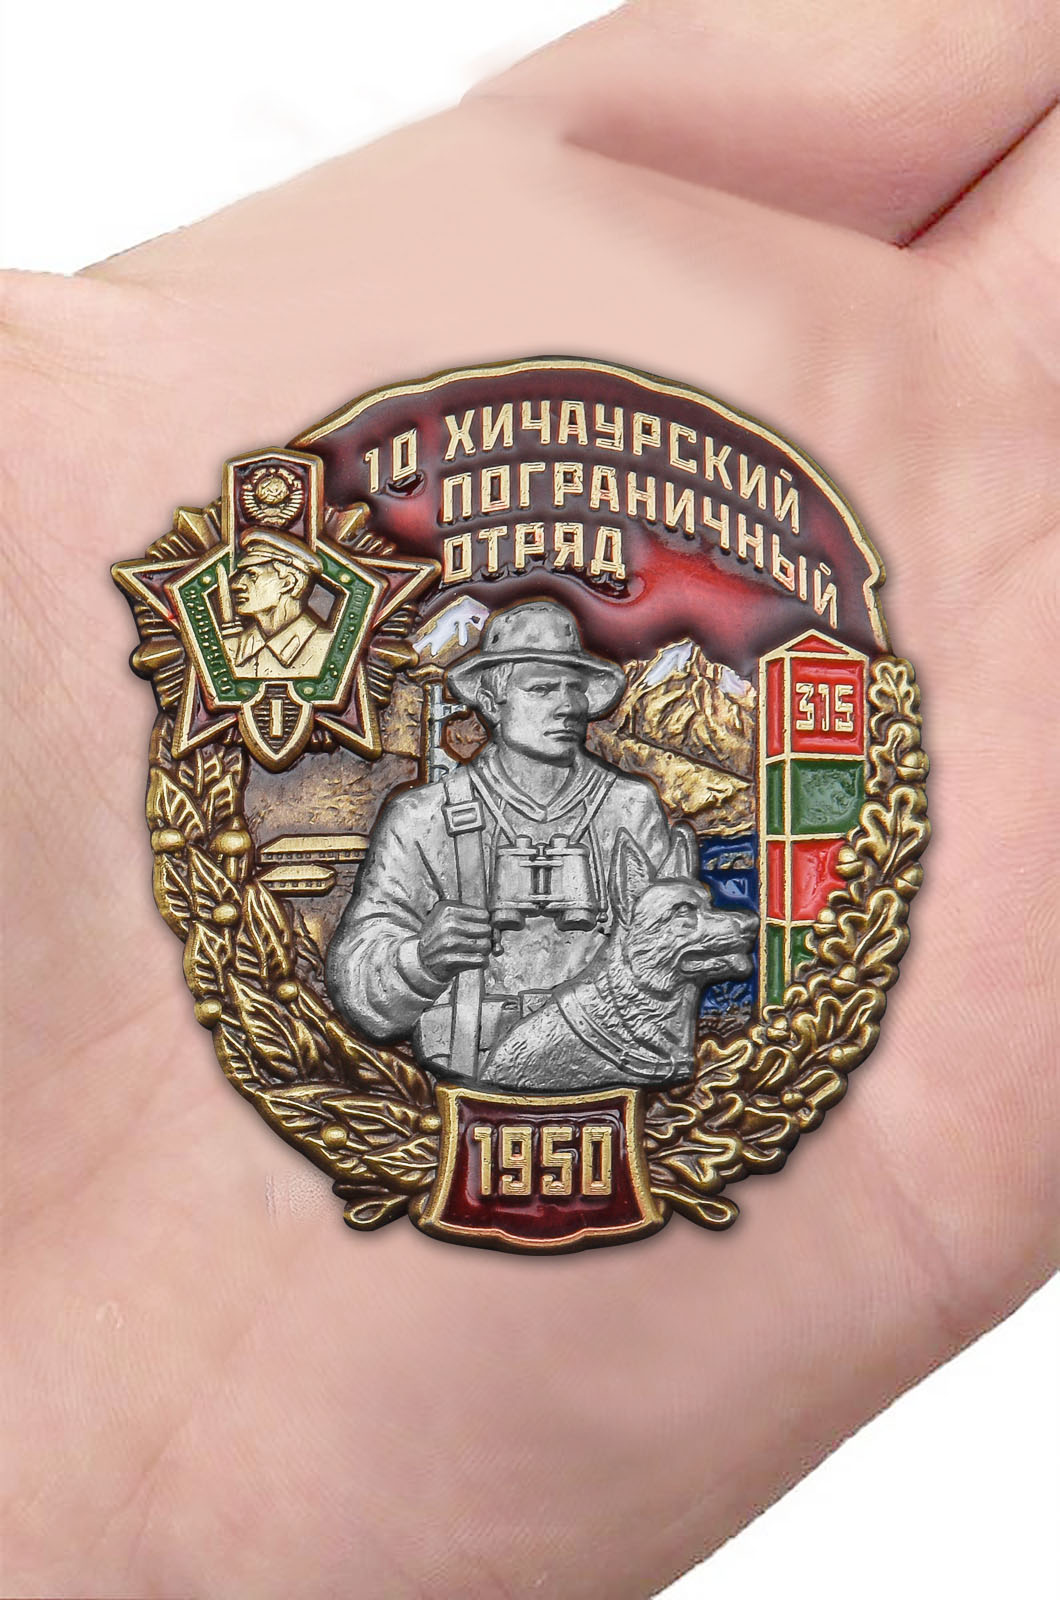 Наградной знак "10 Хичаурский Пограничный отряд" 